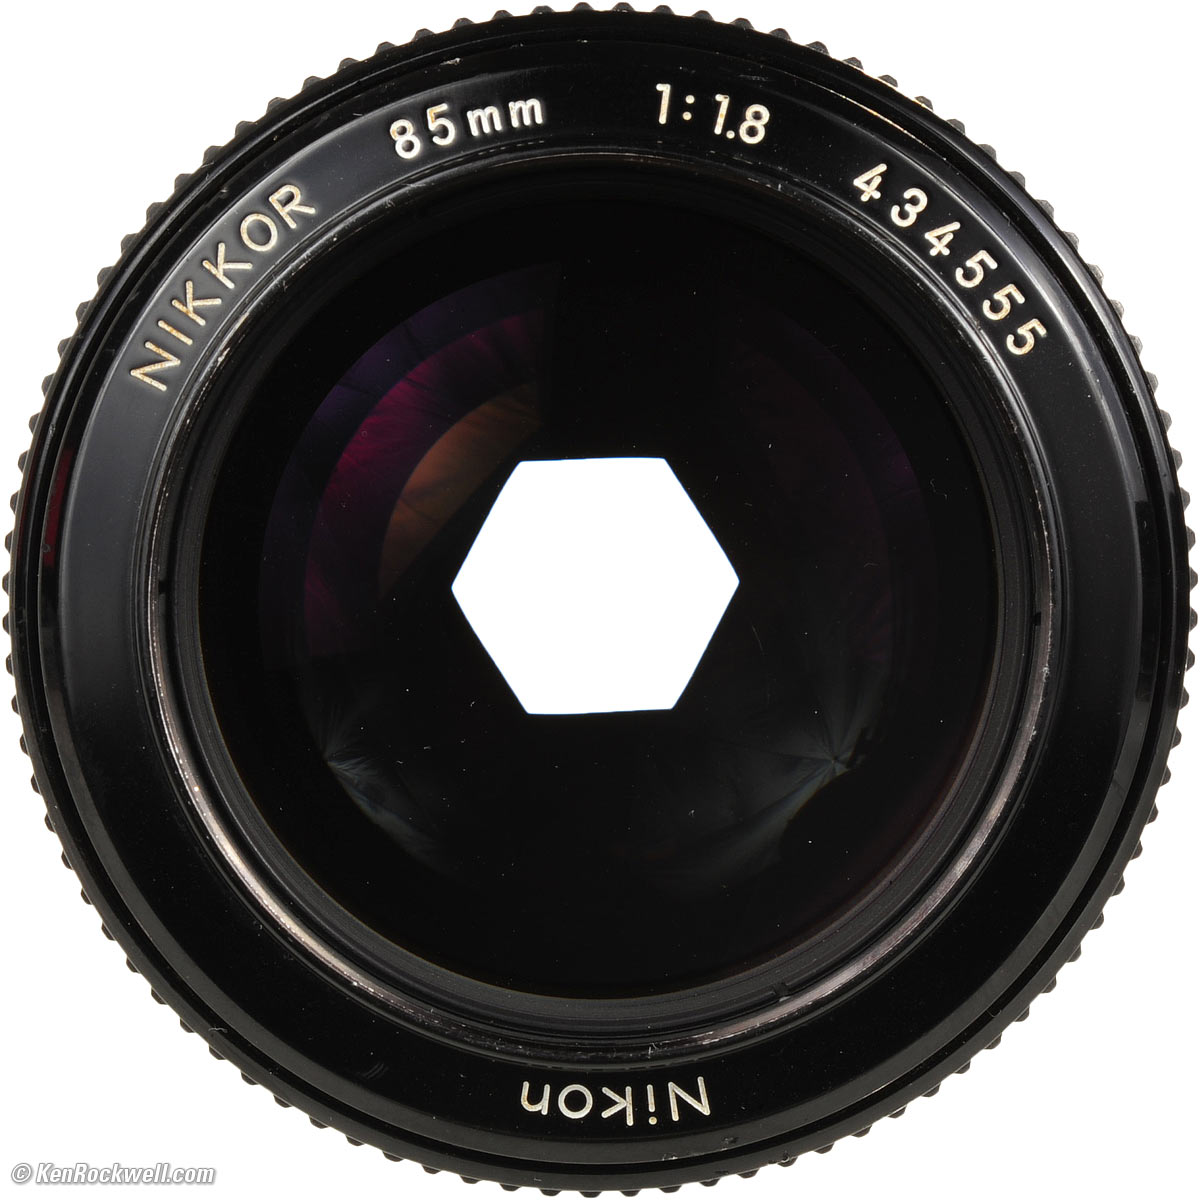 Nikon 85mm f/1.8 (manual-focus) Review